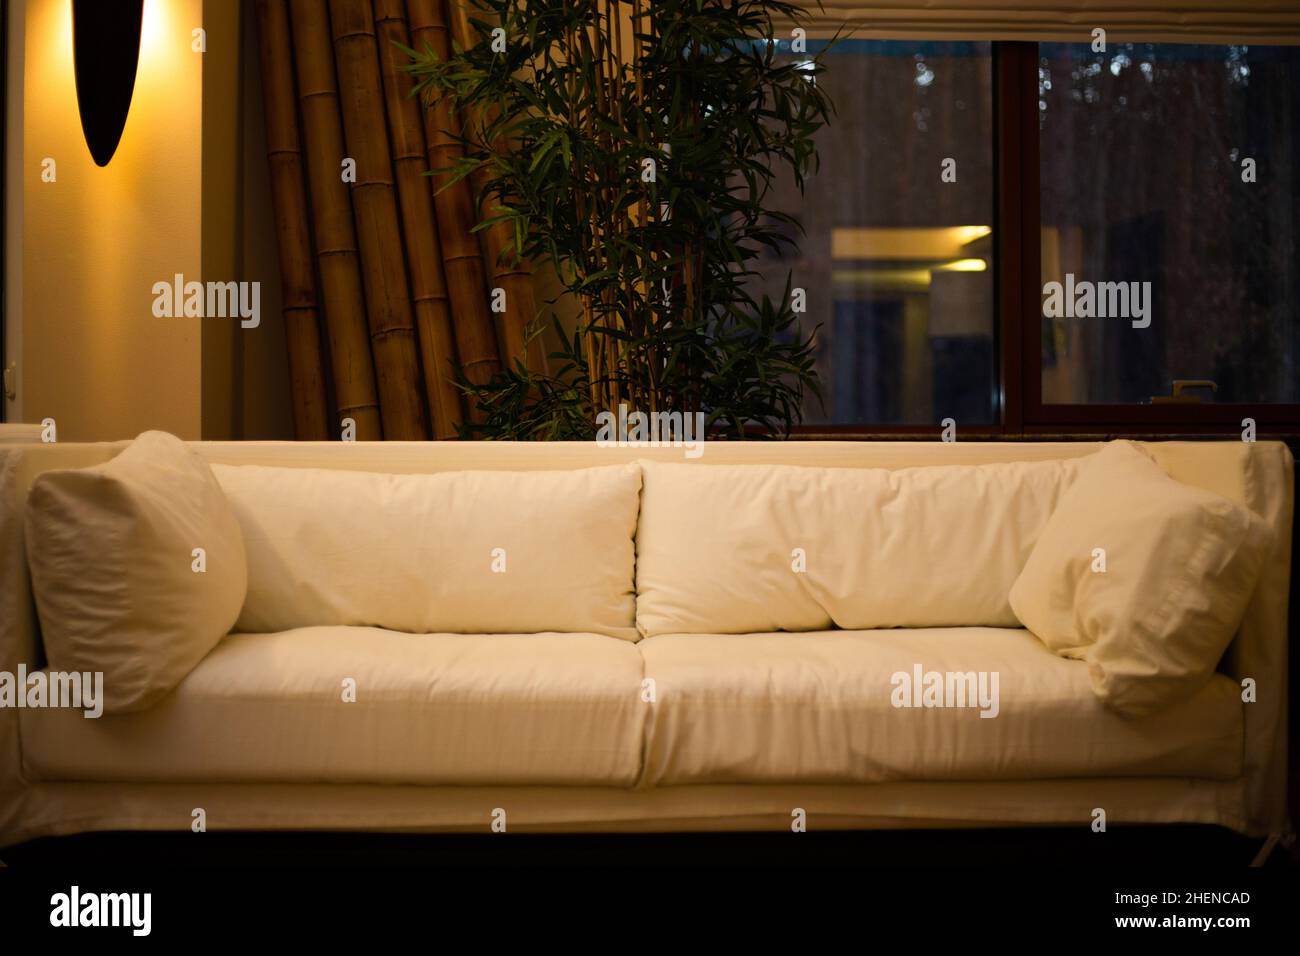 Foto von einem modernen Sofa mit Kissen in einer modischen Wohnung  Stockfotografie - Alamy